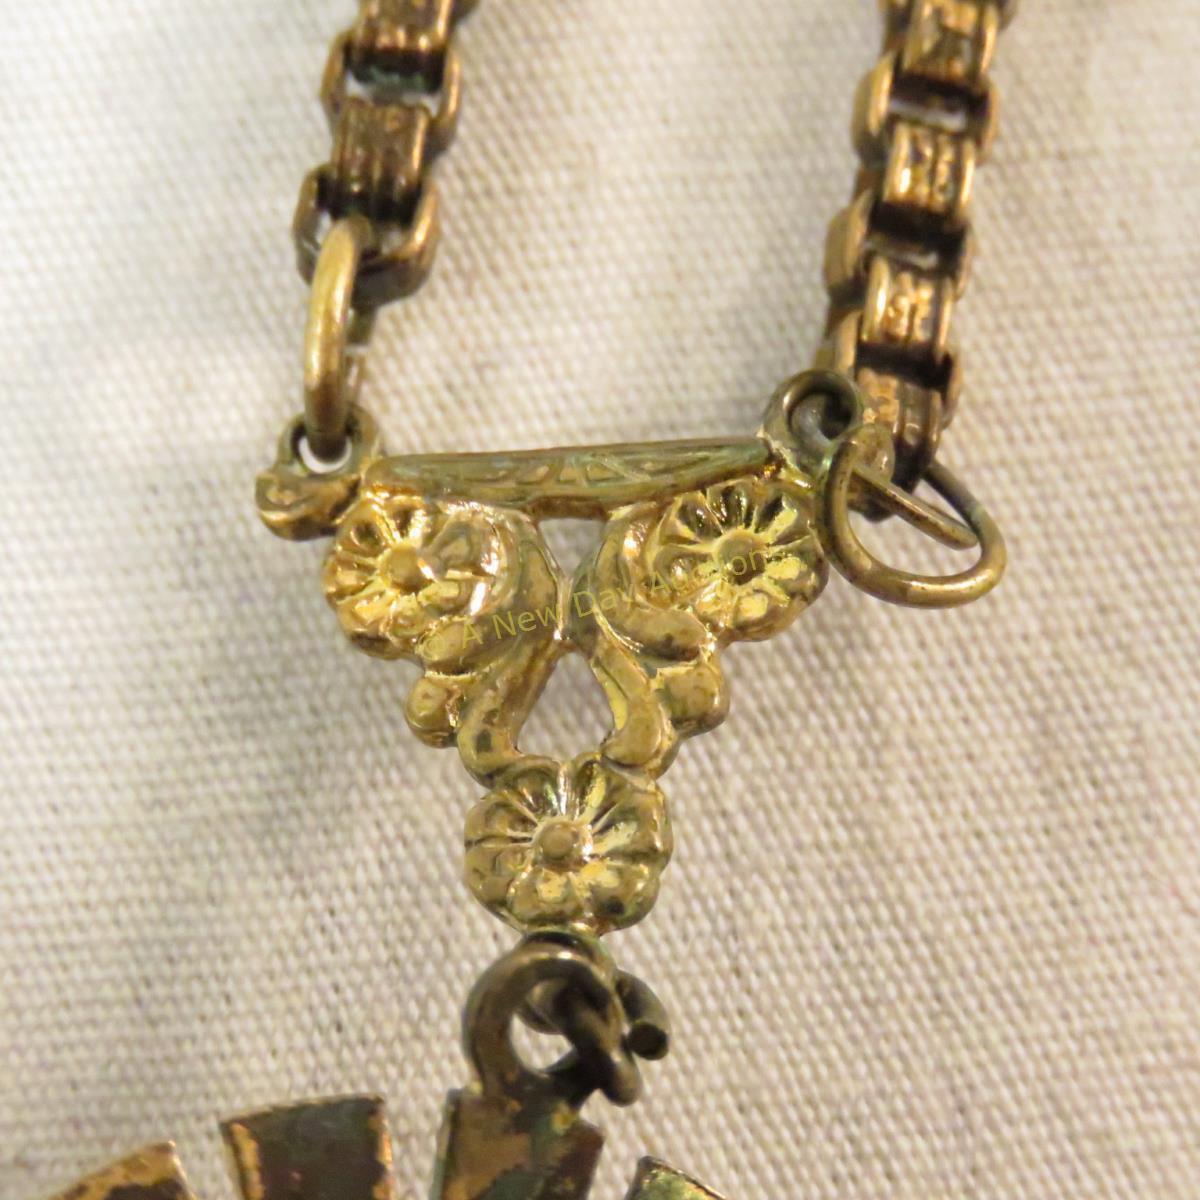 Antique necklace and bracelet